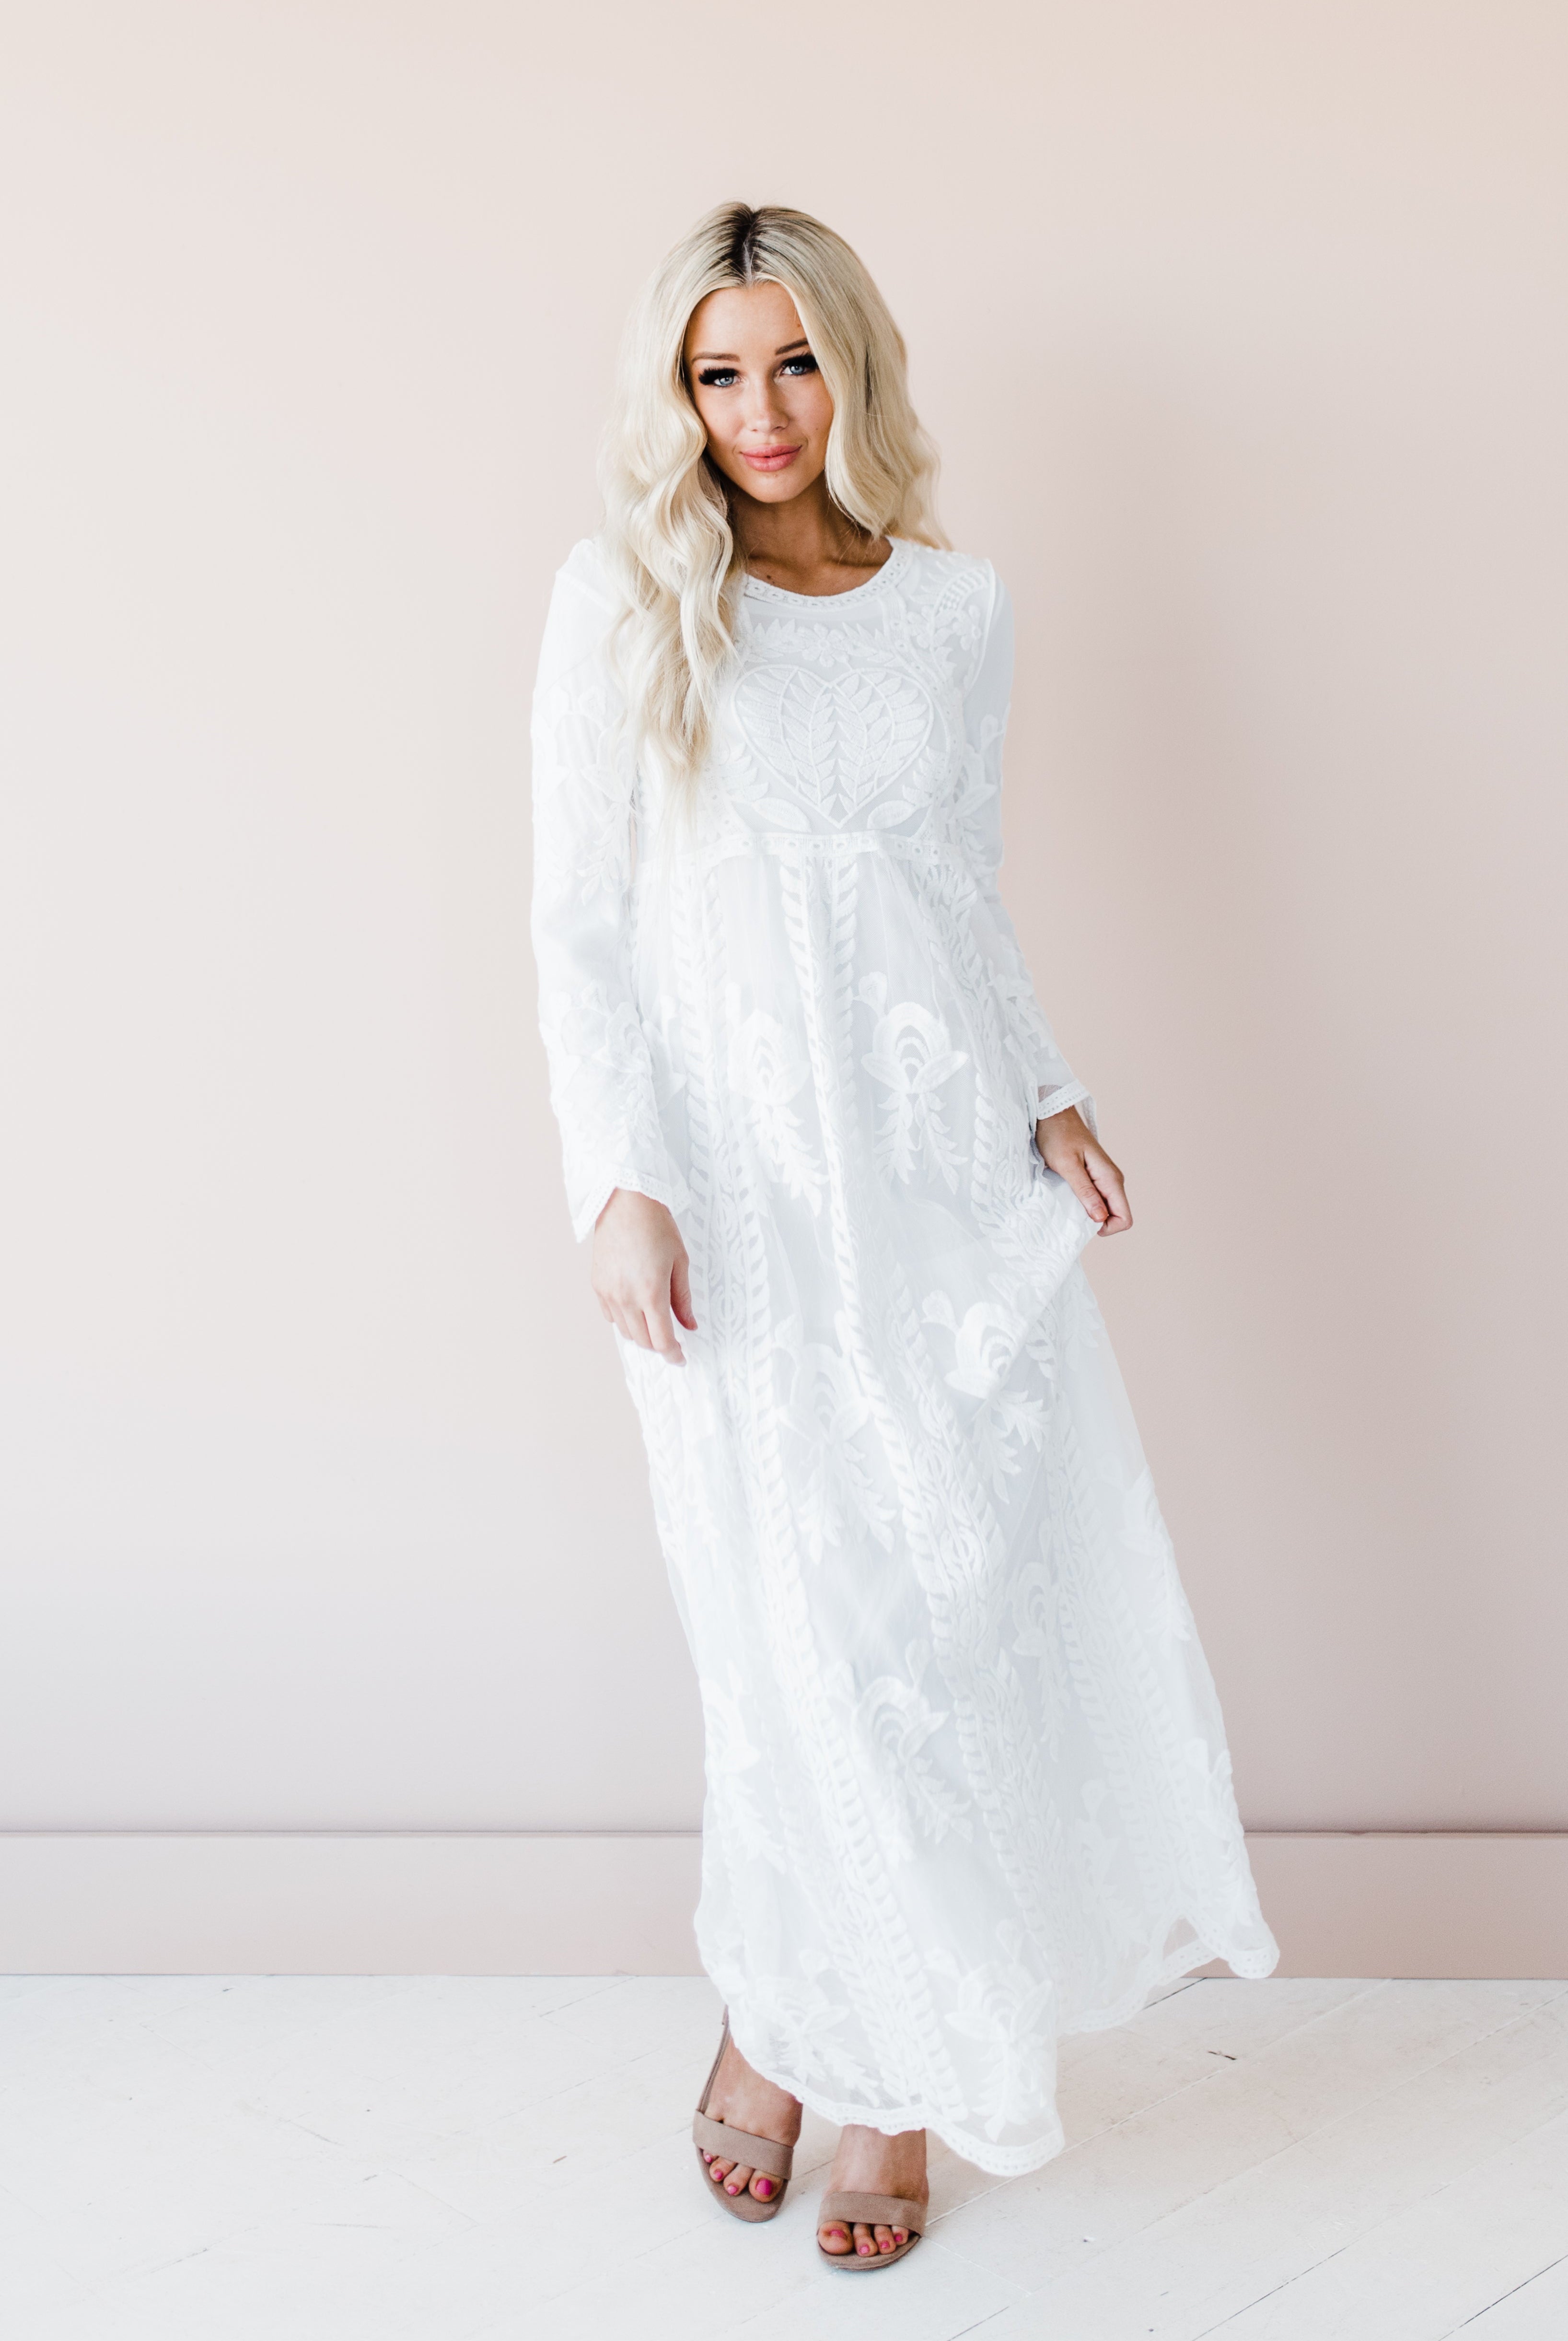 White dresses for petites